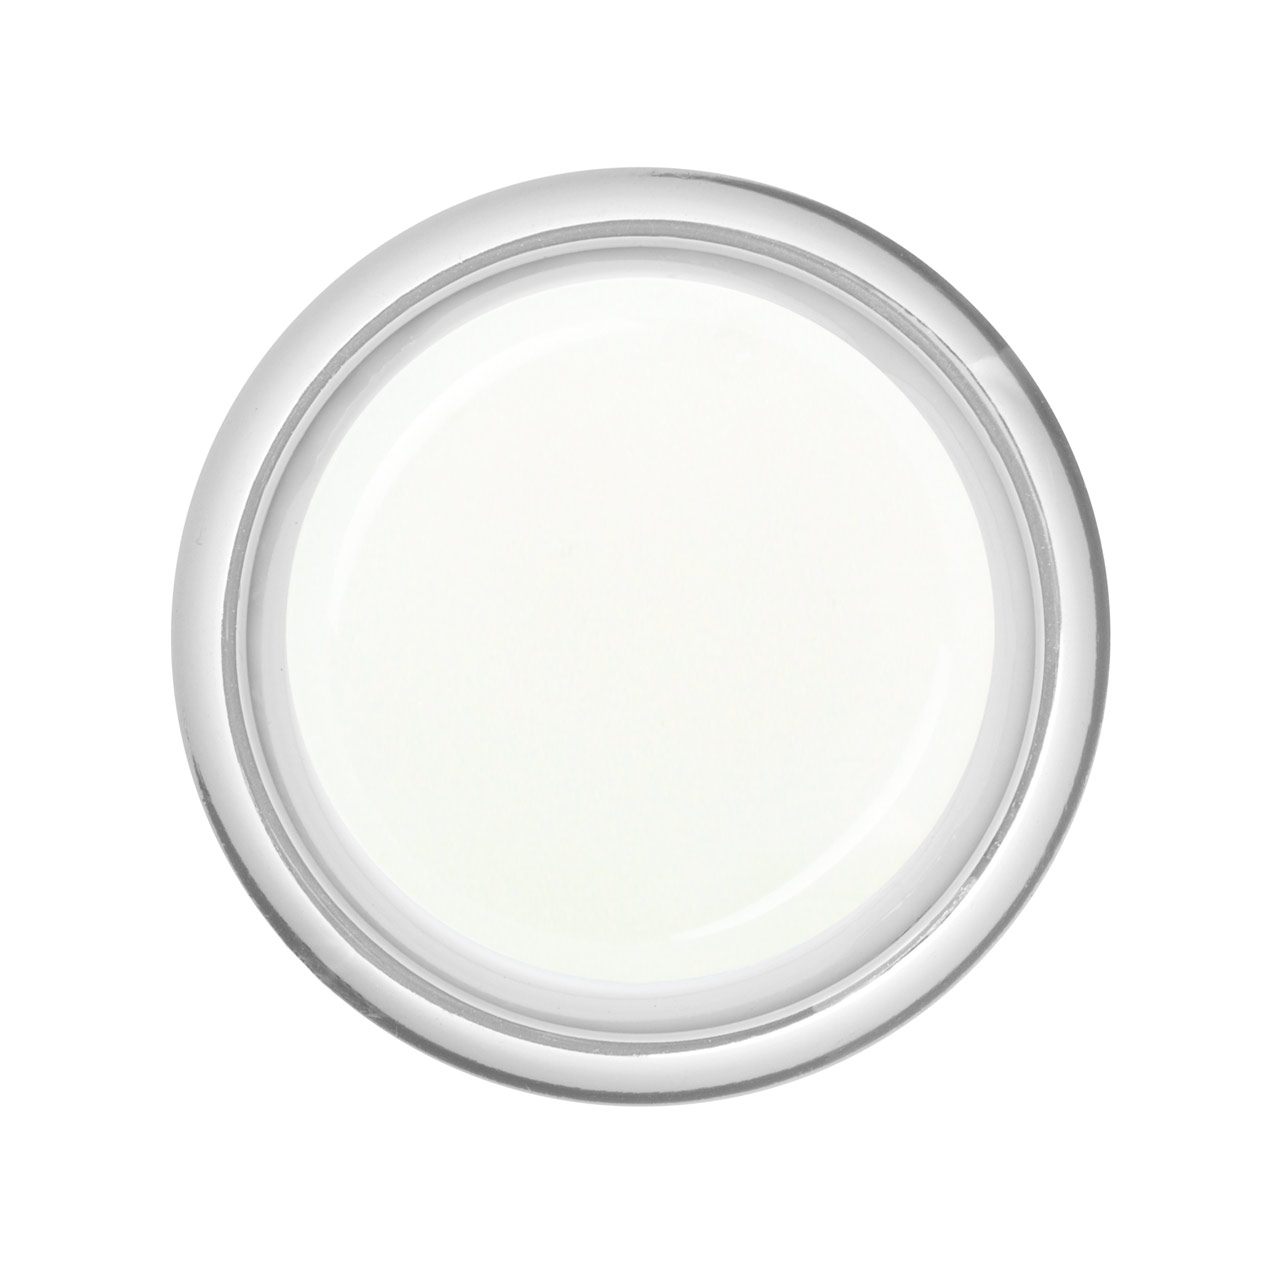 BAEHR BEAUTY CONCEPT NAILS Schablonen French-Gel Medium Weiß 30 ml